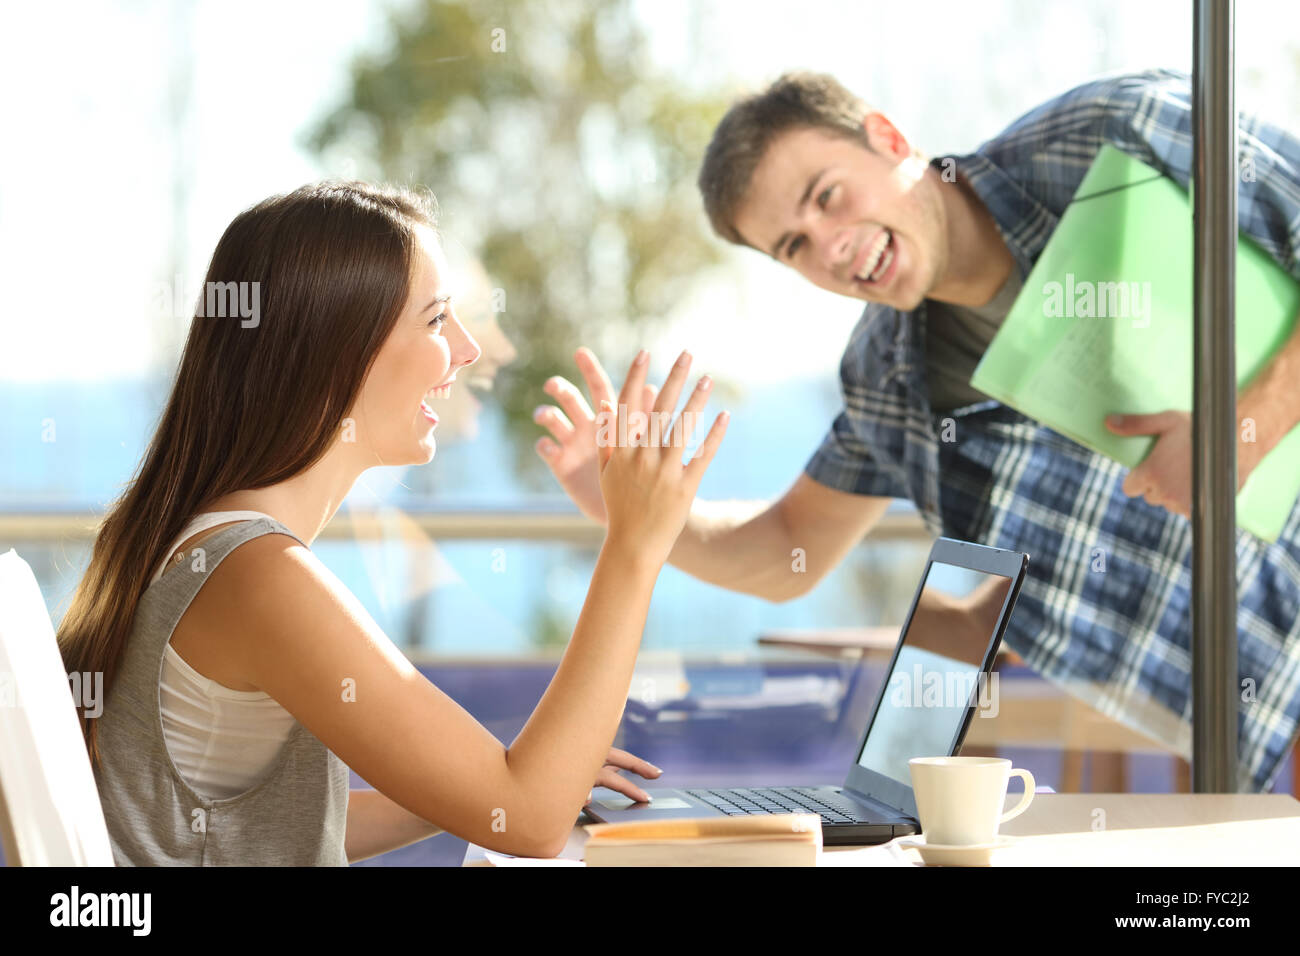 Heureux les amis ou couple greeting des signes avec la main et à l'autre dans une date dans un café Banque D'Images